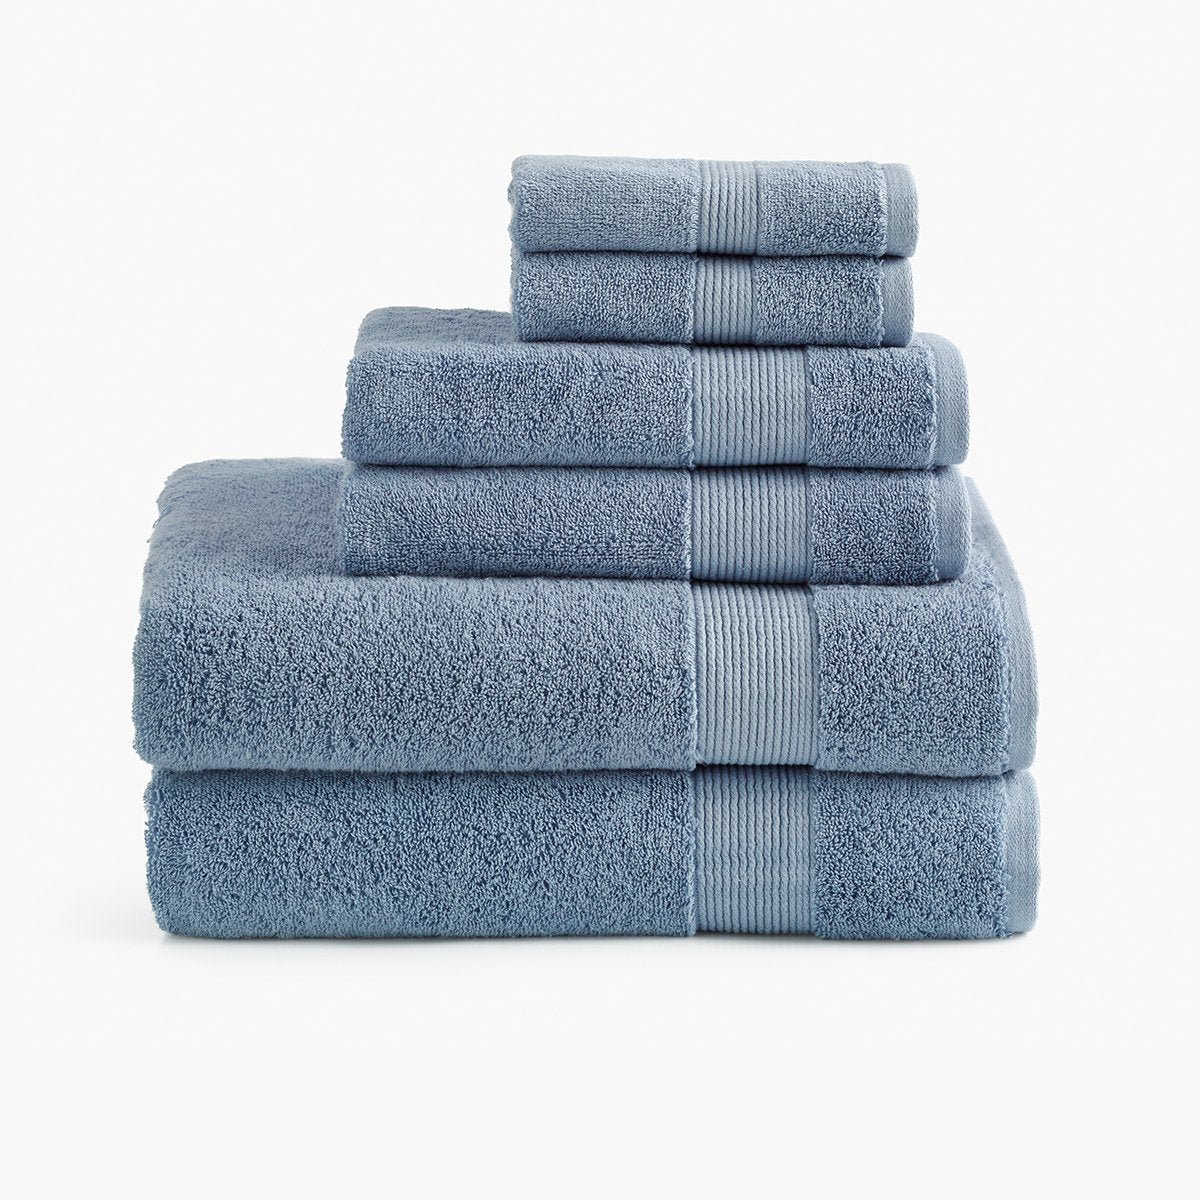 https://cdn.shopify.com/s/files/1/0557/8840/4900/products/classic-organic-cotton-bath-towel-chambray-blue-bundle_1200x.jpg?v=1684517449